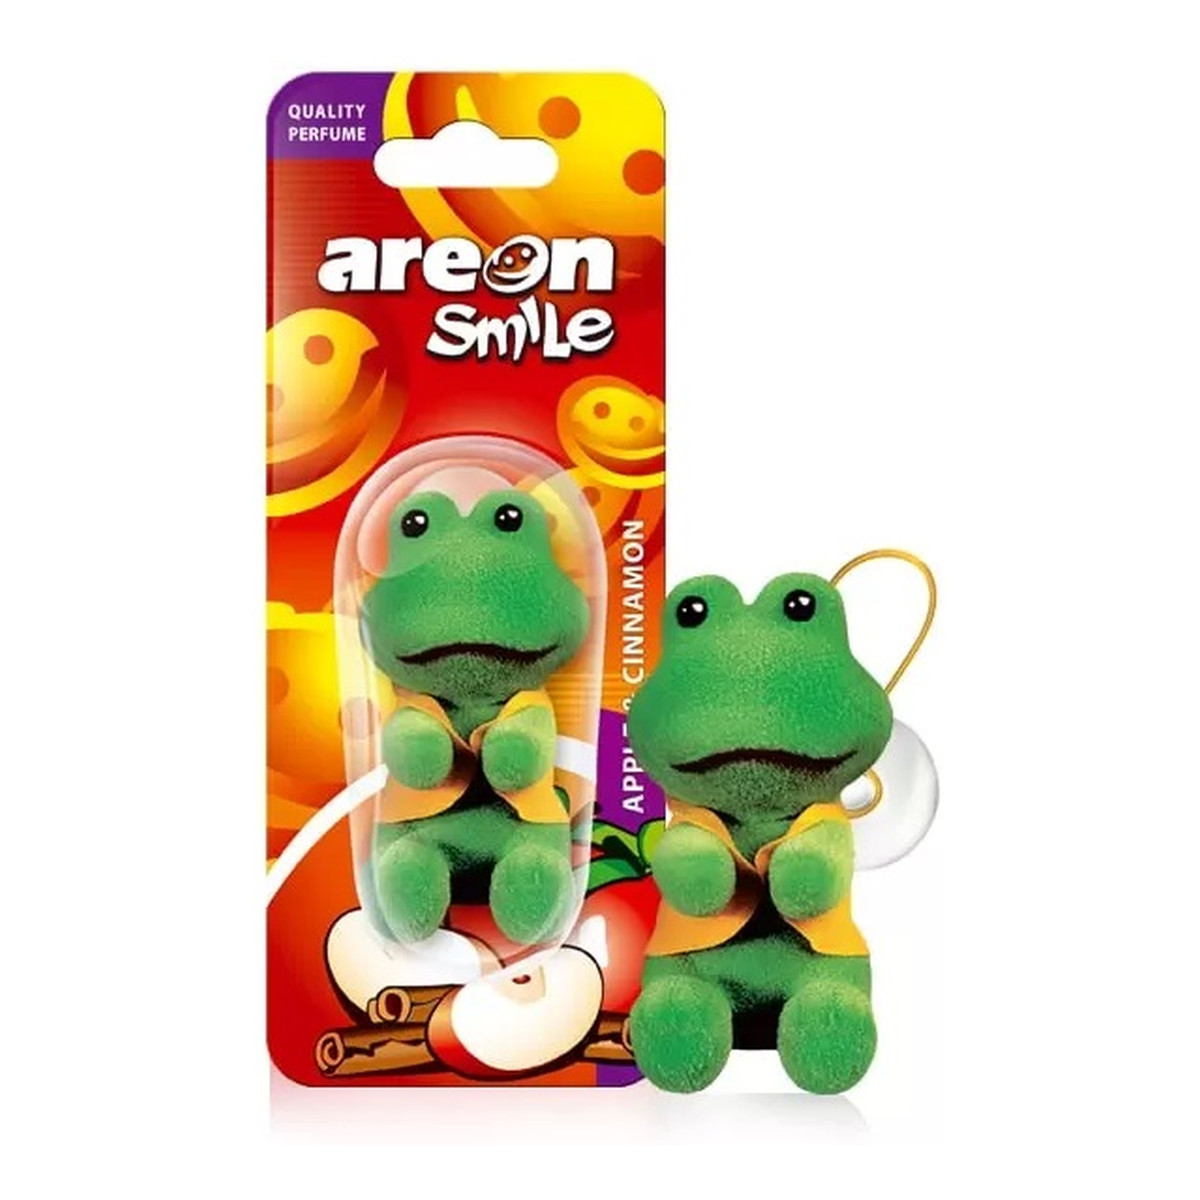 Areon Smile toy odświeżacz do samochodu apple & cinnamon